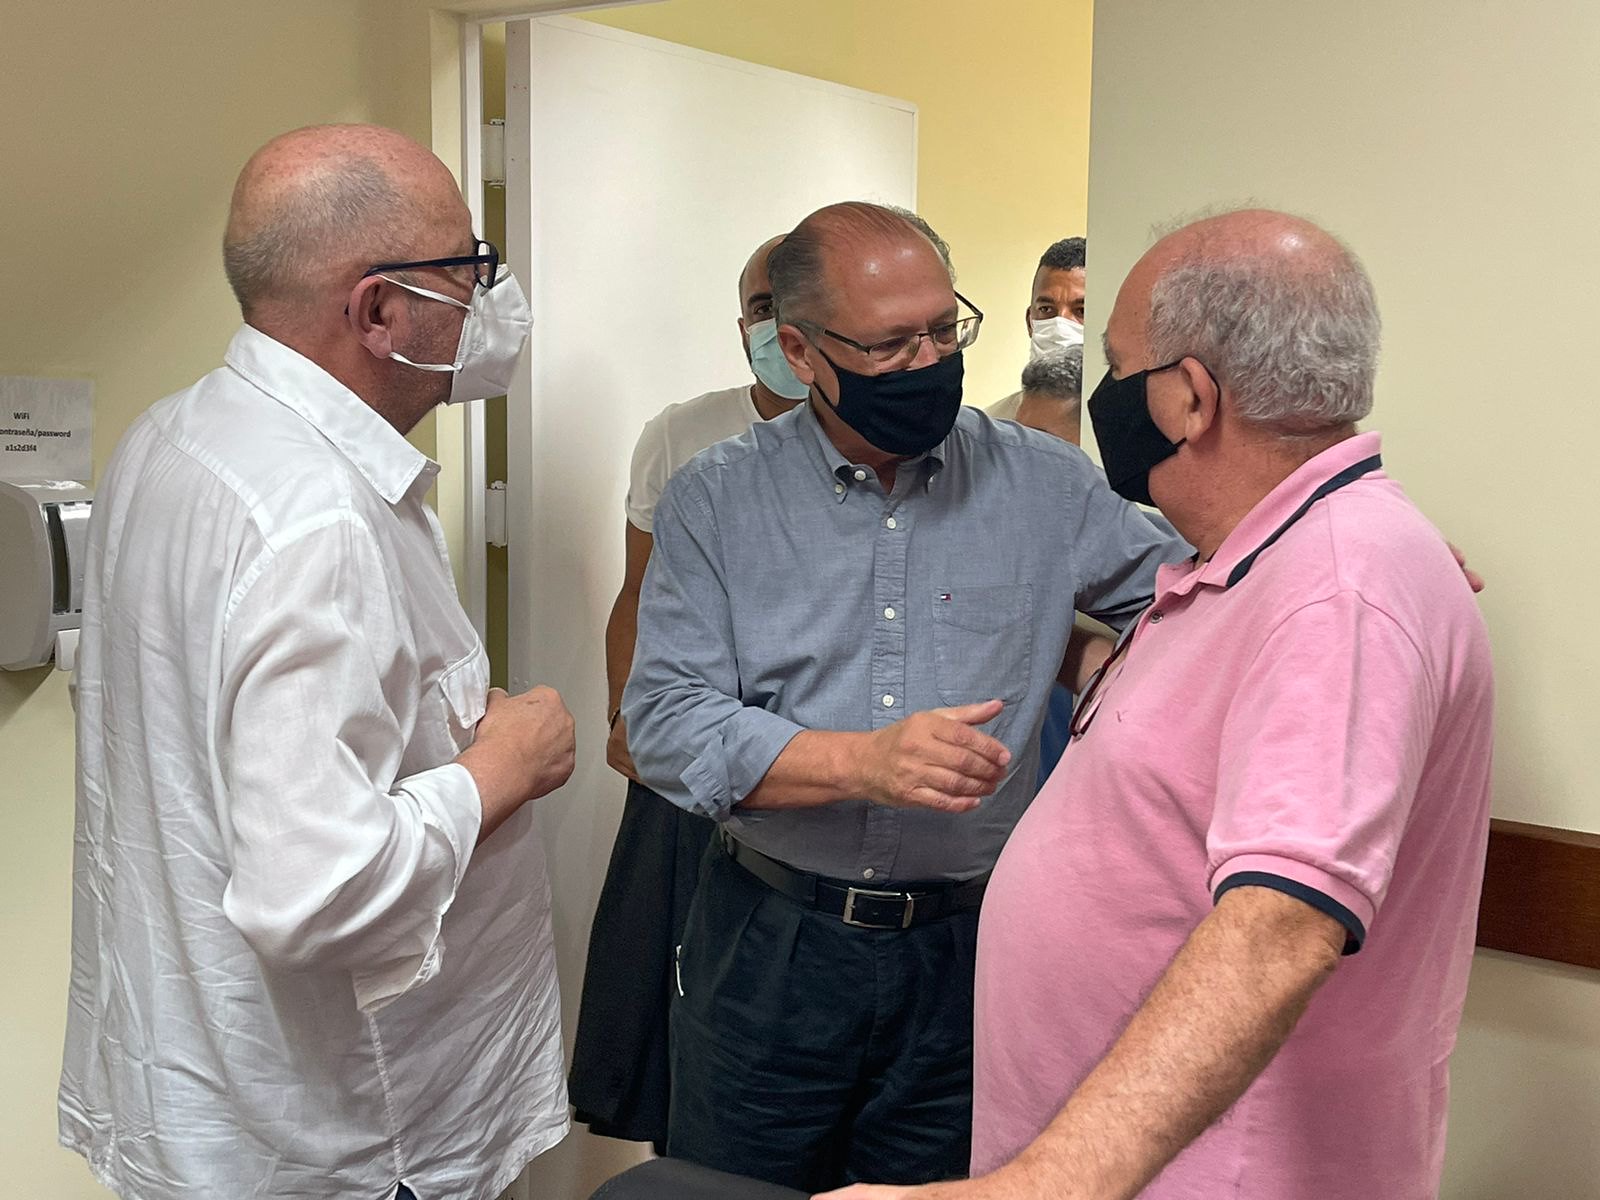 Alckmin cumprimenta dois sindicalistas. Ele usa máscara e calças pretas e camisa social de mangas compridas azul. Os dois sindicalistas estão de camisa branca social, à esquerda, e camisa polo, rosa, à direita. Os três são brancos e calvos..